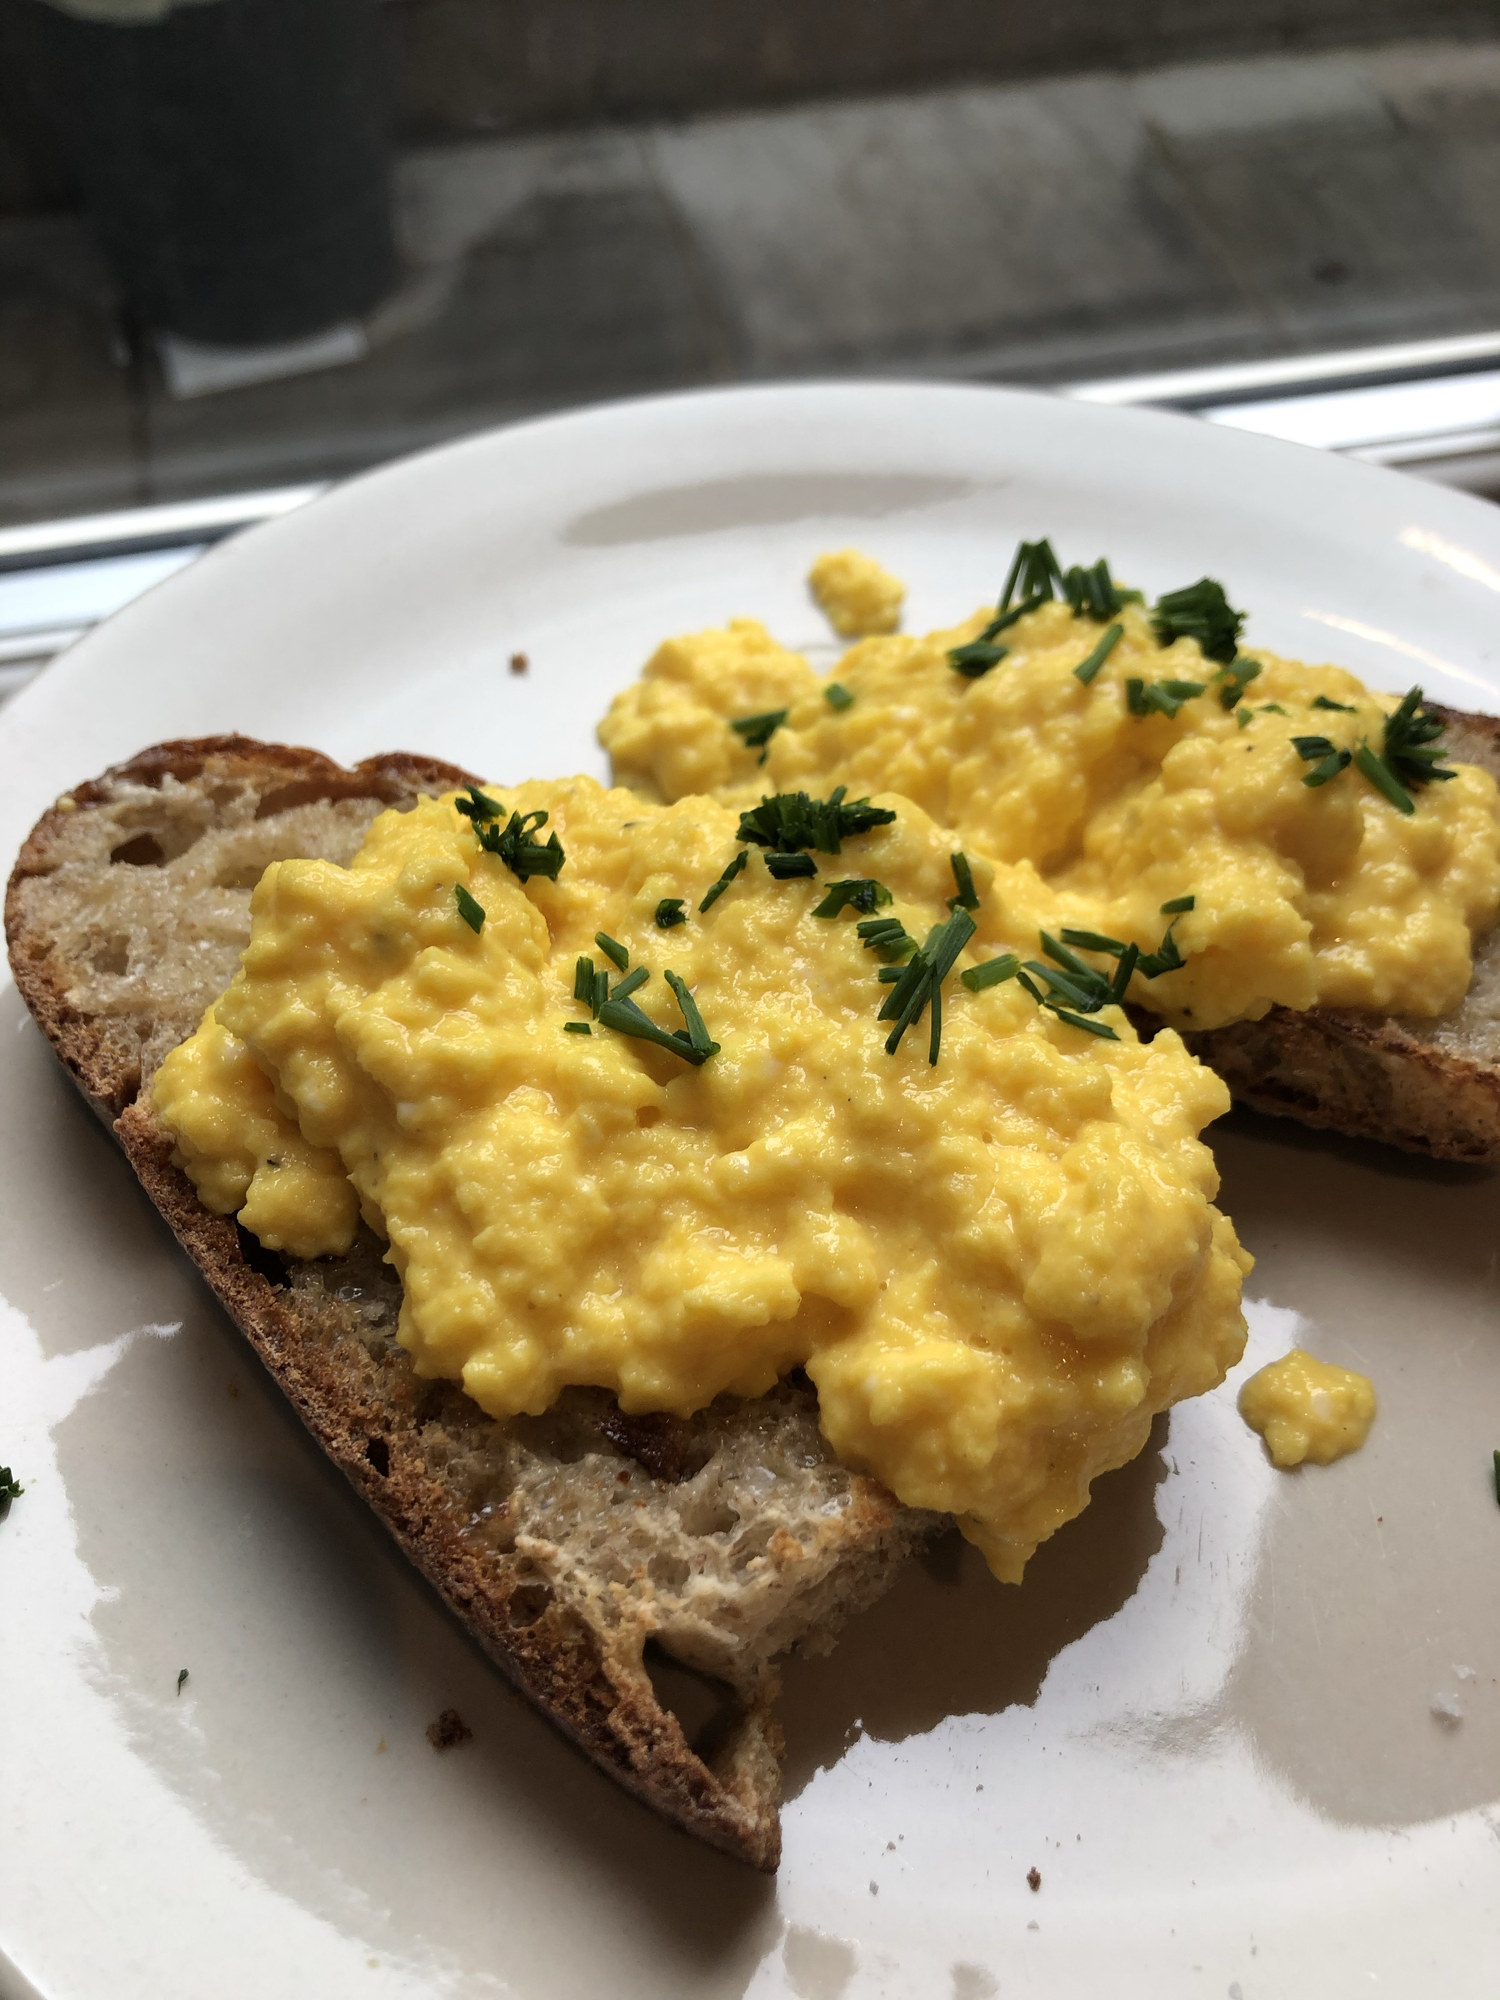 Loose scrambled eggs on toast.